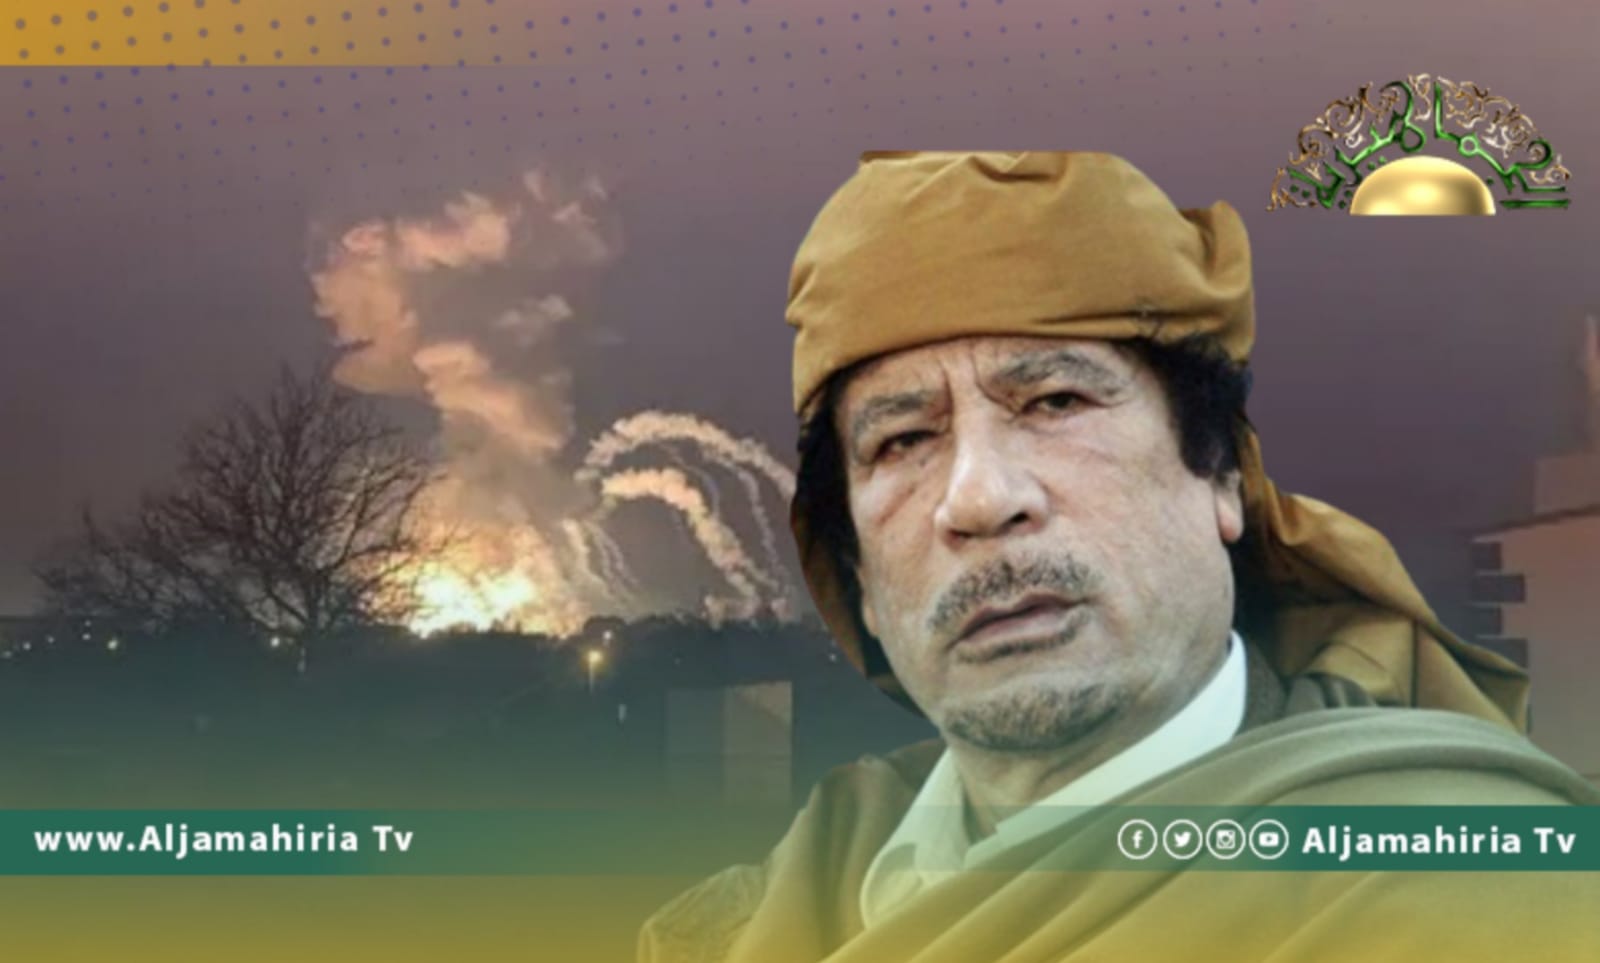 تقرير يرصد// كيف توقع القائد الشهيد معمر القذافي بمآلات الأزمة الأوكرانية وأسباب الحرب قبل سنوات